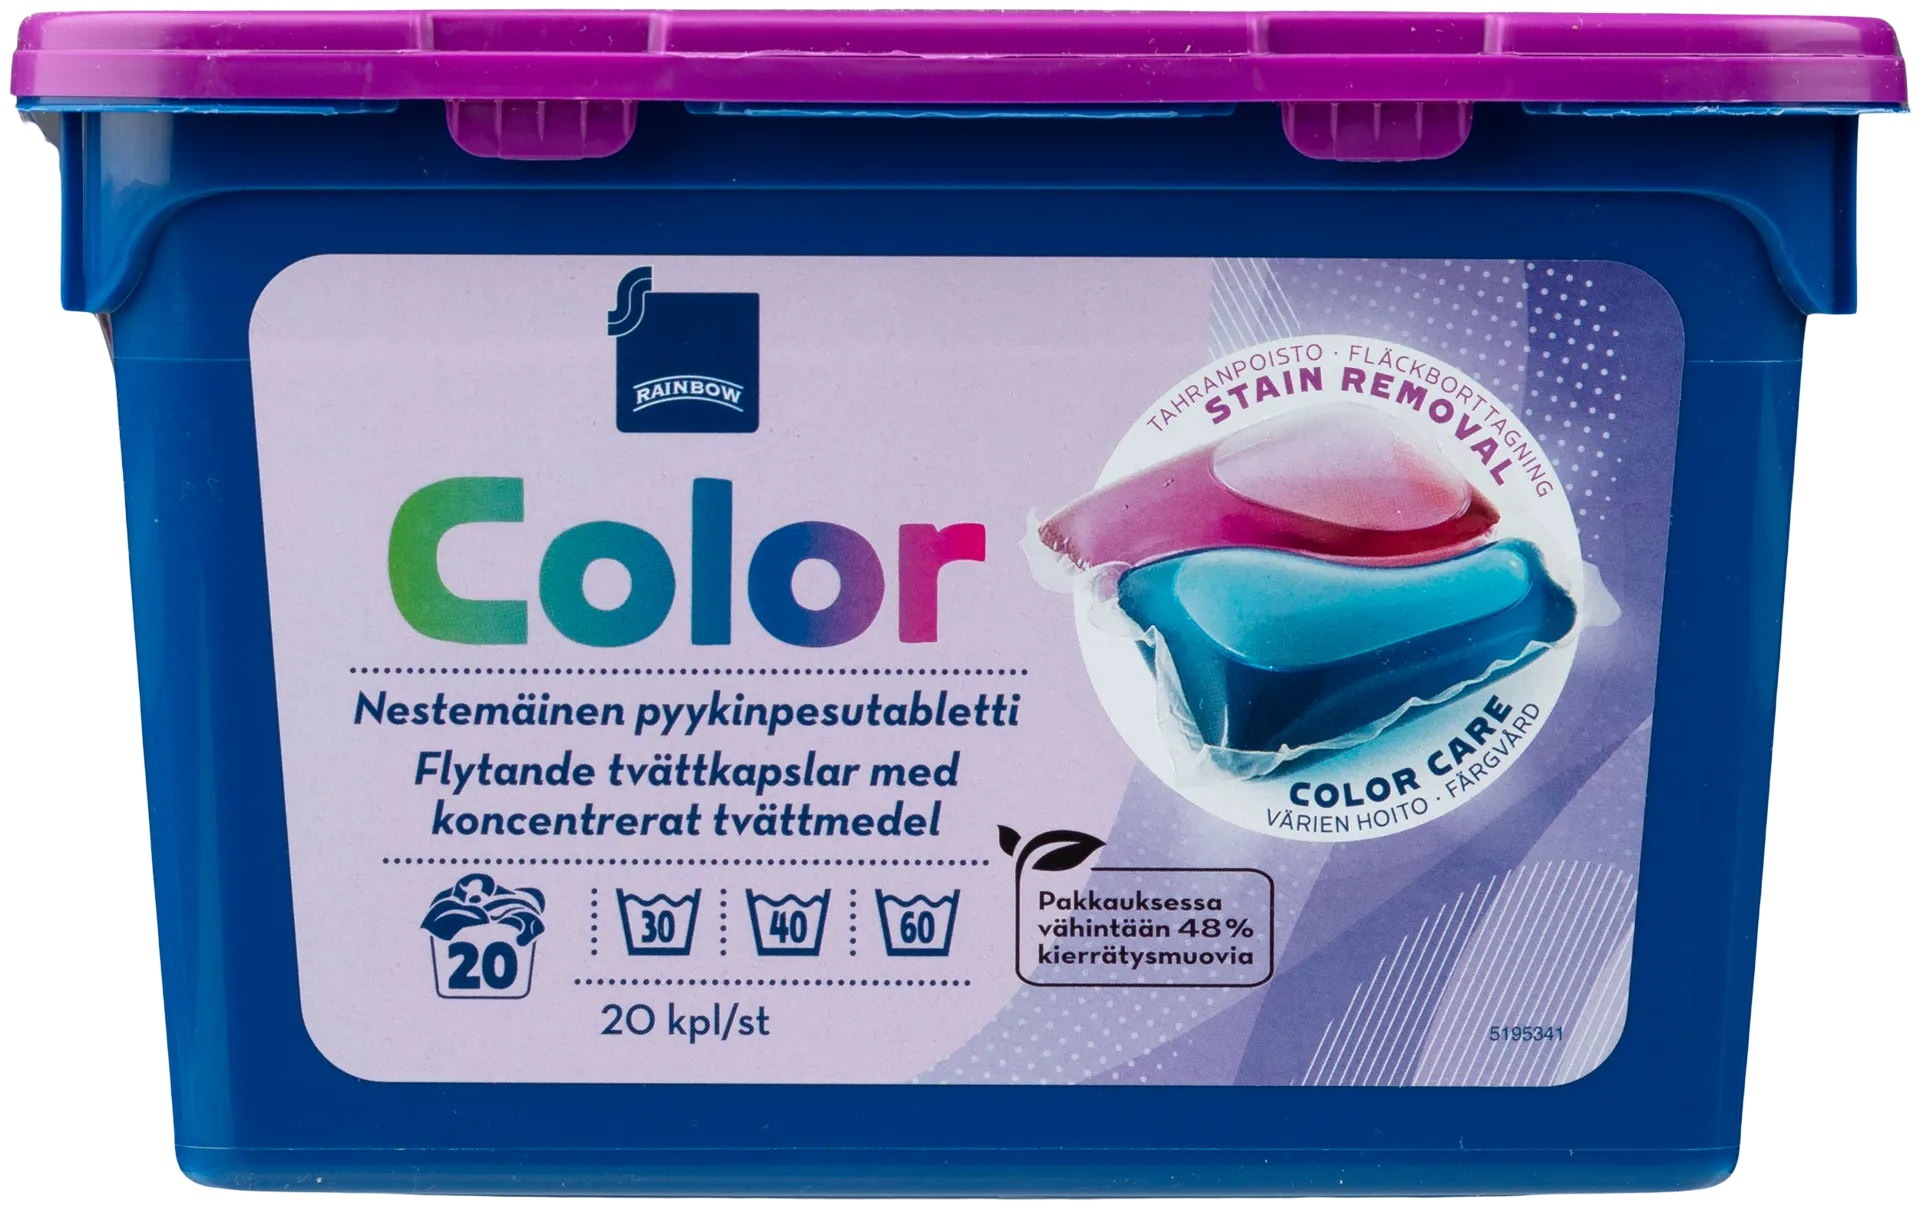 Rainbow Color nestemäinen pyykinpesutabletti 20kpl